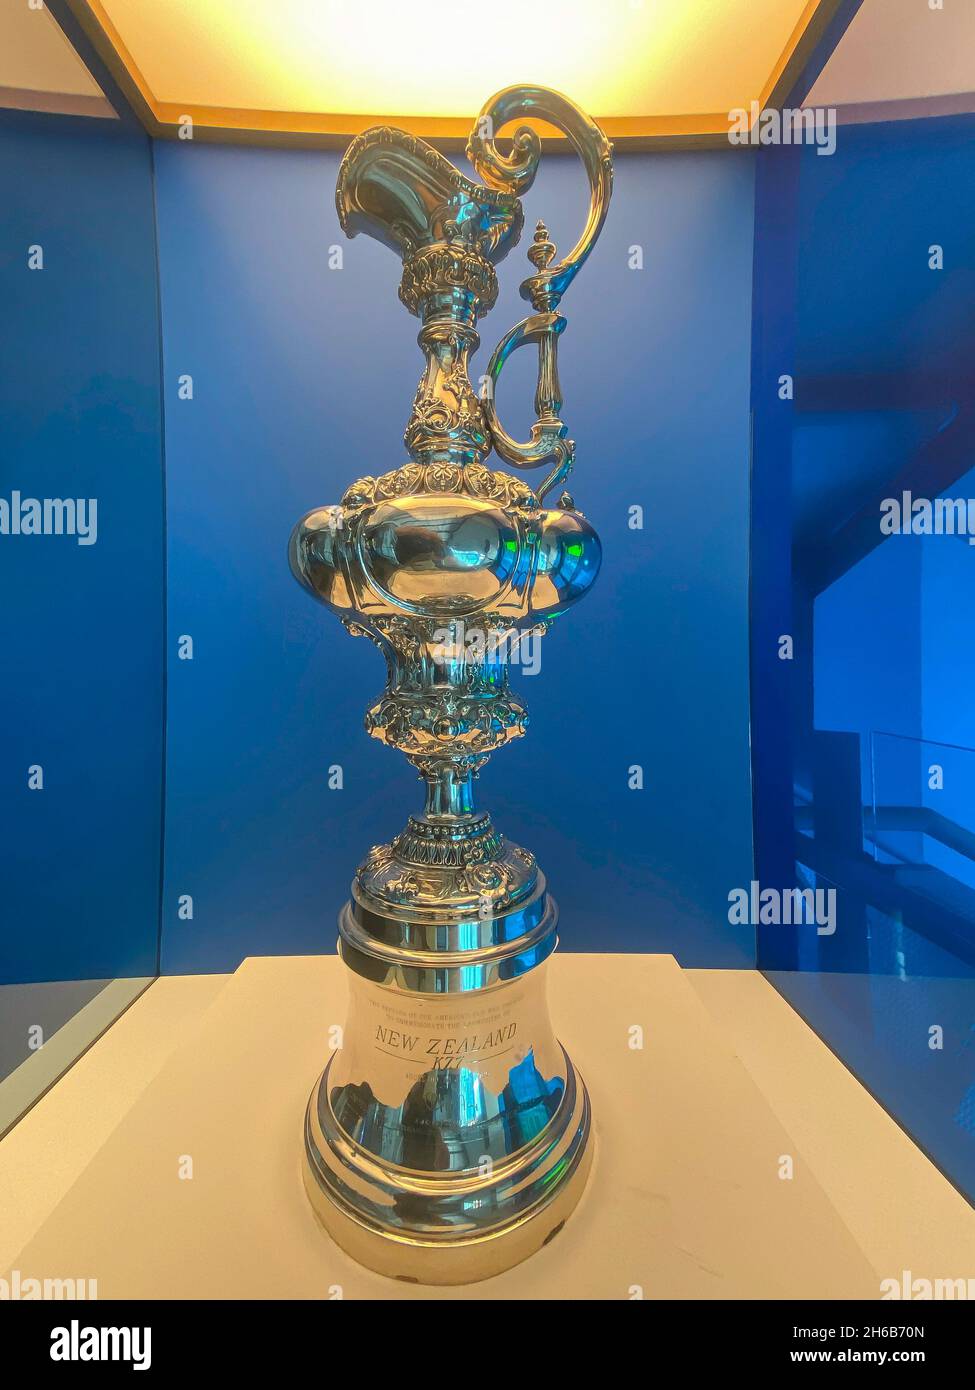 Trophée de la coupe de l'Amérique exposé au Musée maritime de Nouvelle-Zélande (hui te Ananui a Tangaroa), port de Viaduct, Auckland, Nouvelle-Zélande Banque D'Images